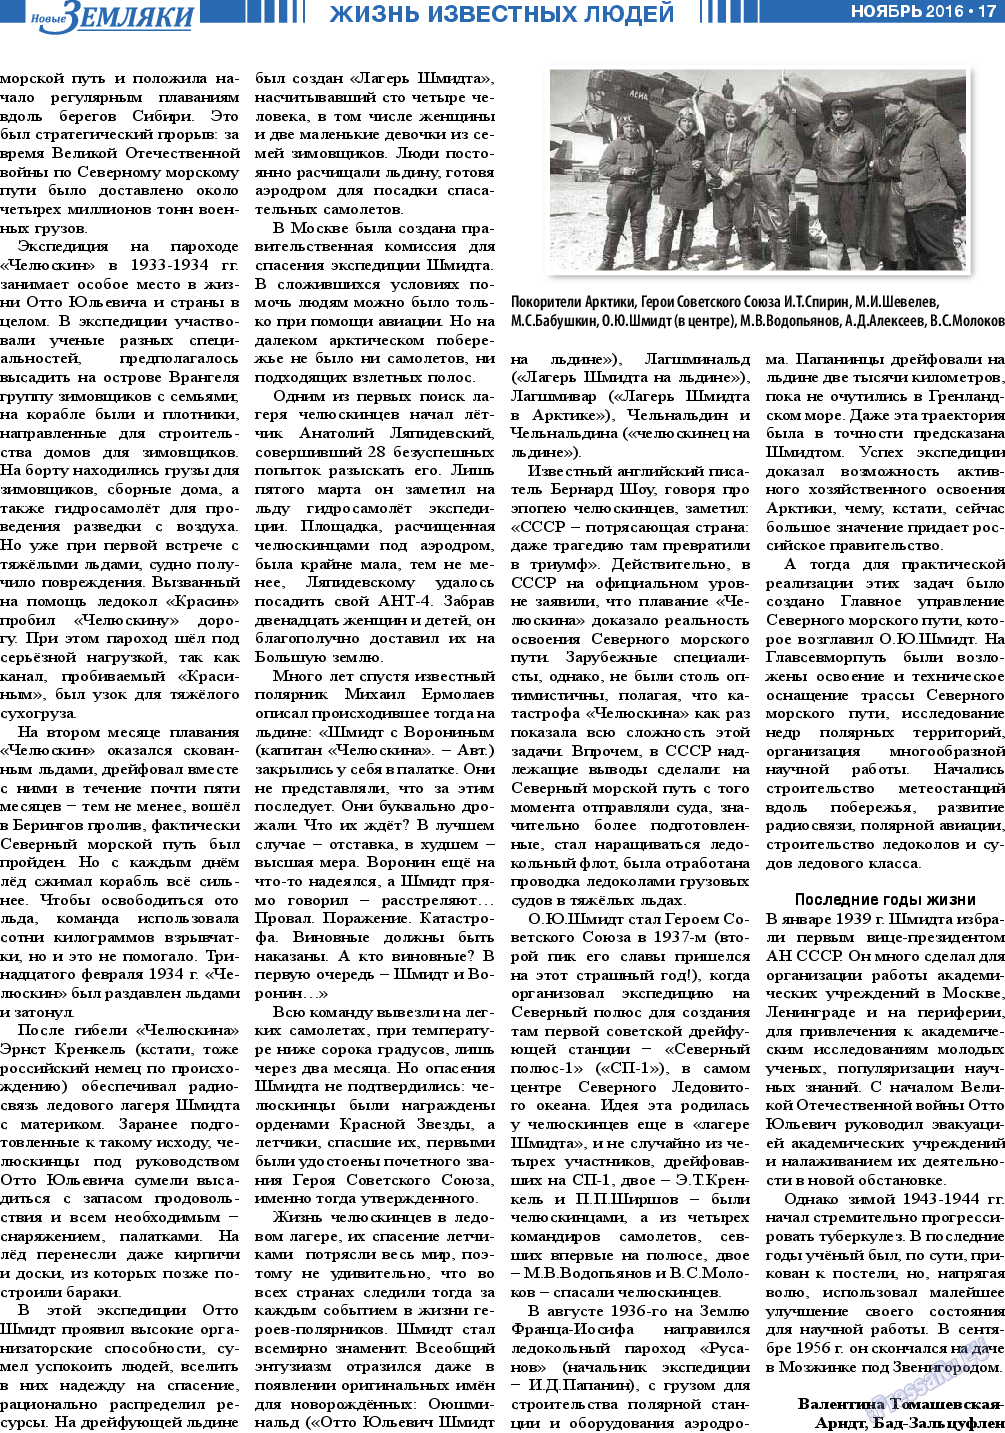 Новые Земляки (газета). 2016 год, номер 11, стр. 17